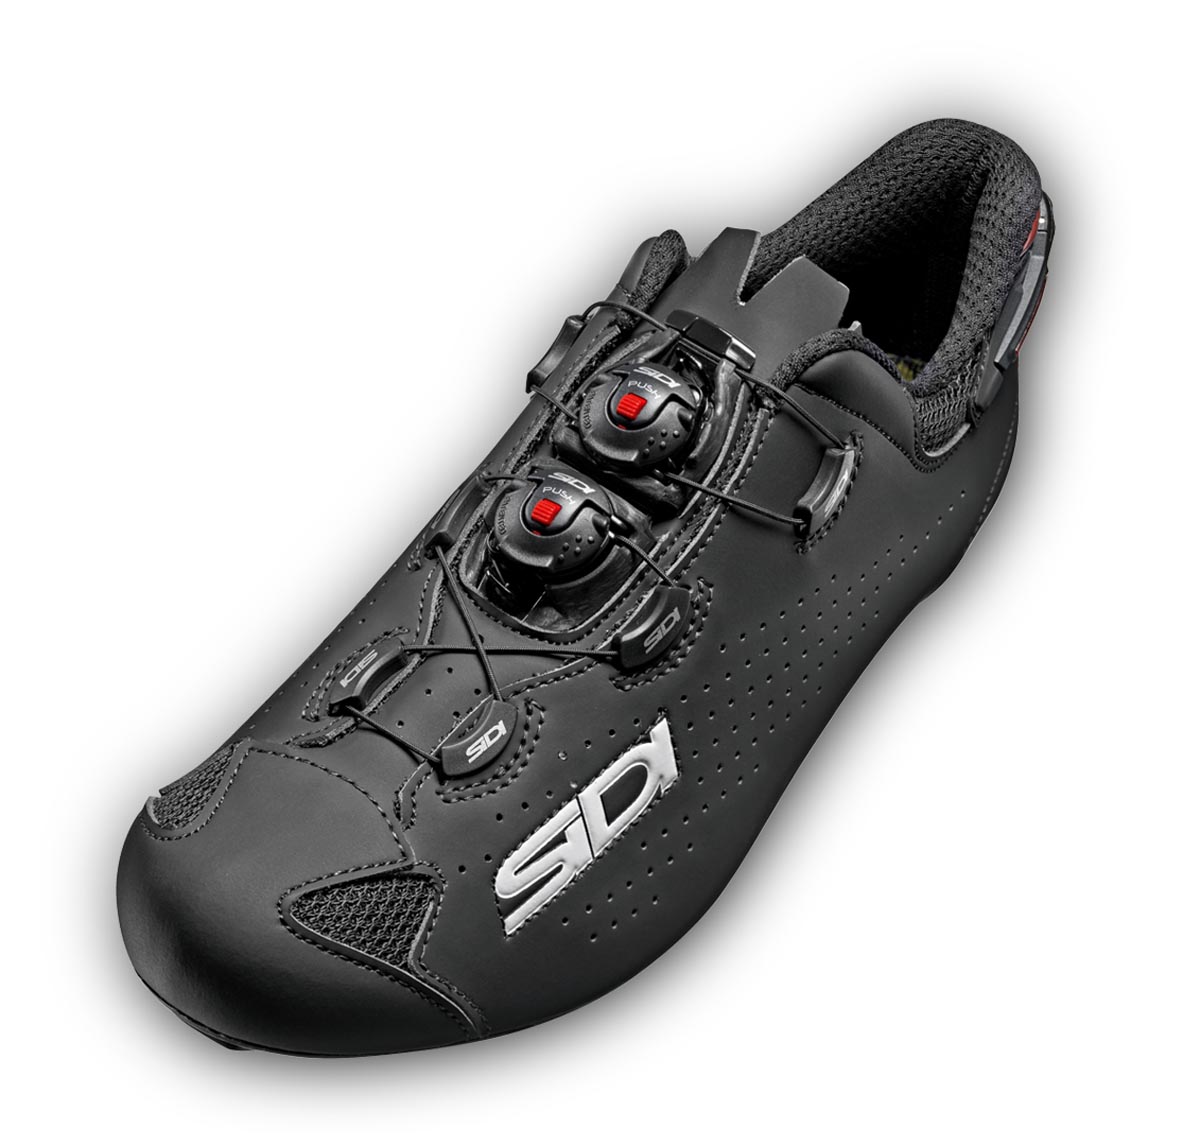 更贴合的分体双旋钮 SIDI发布新款Shot 2公路车锁鞋